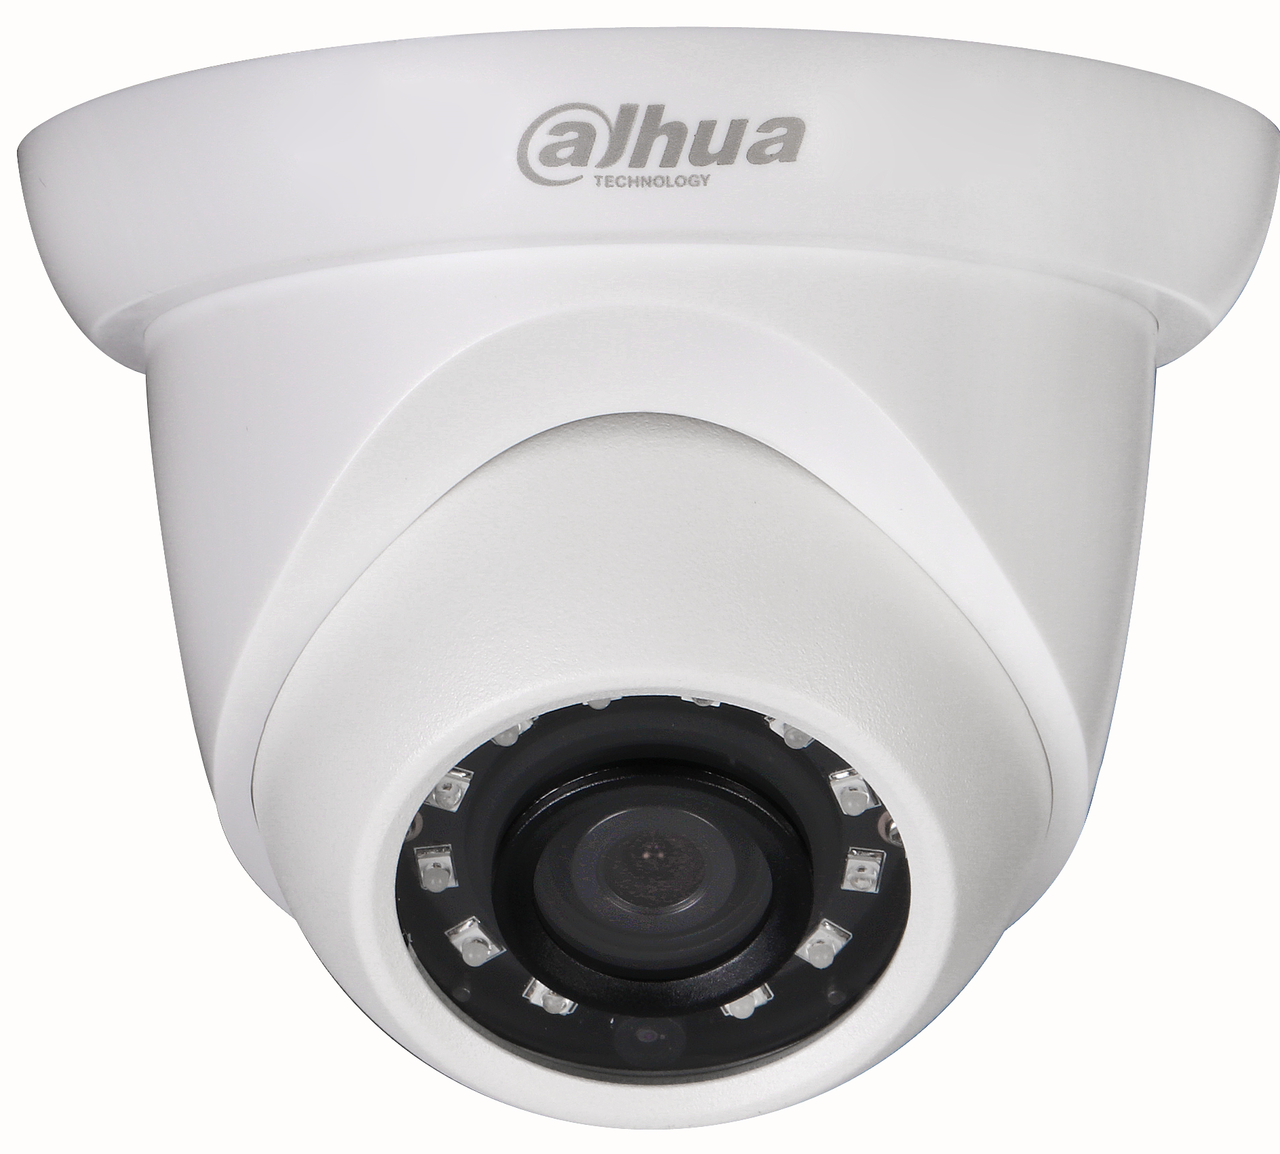 Dahua N51BI22 5MP IR 2.8mm Mini Eyeball Network Camera